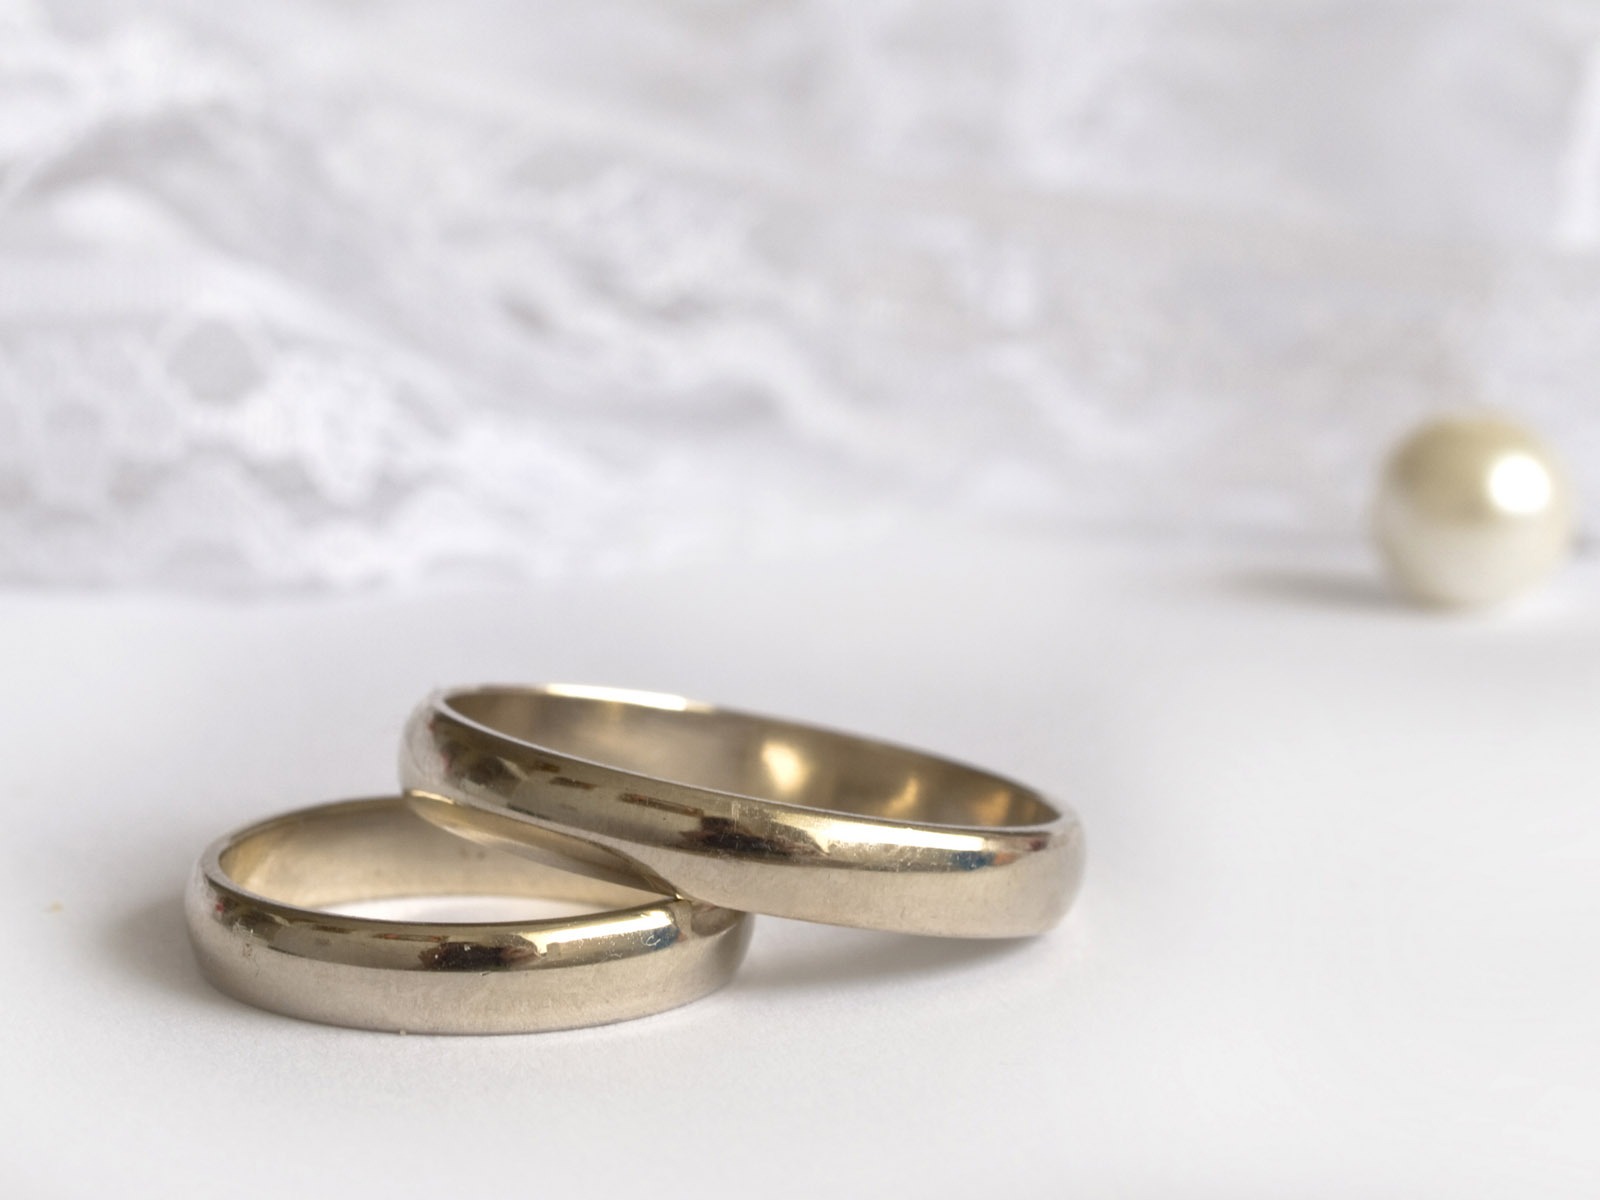 Mariage et papier peint anneau de mariage (2) #3 - 1600x1200